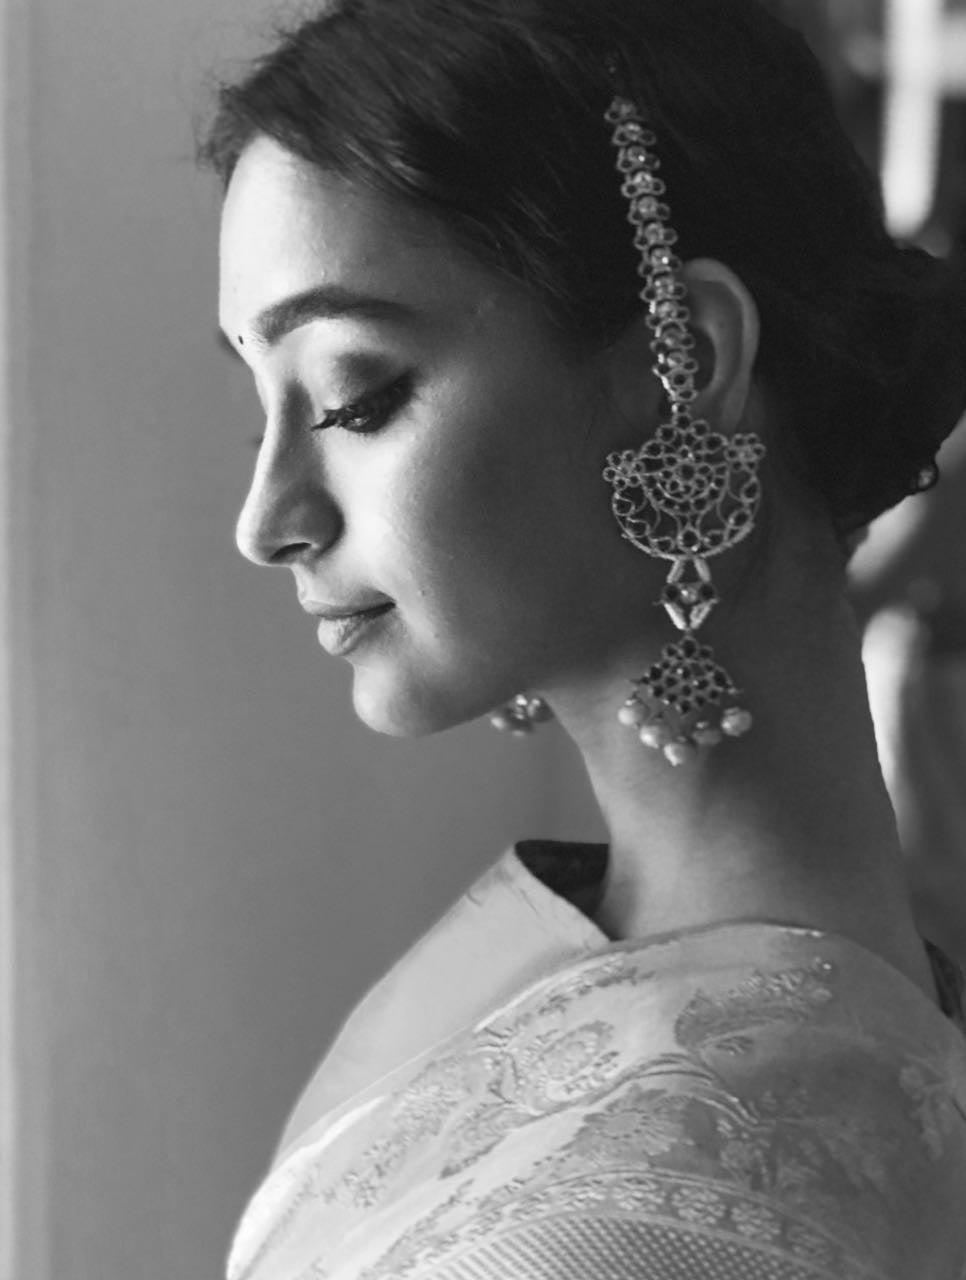 Amiya Earrings - Aaharya